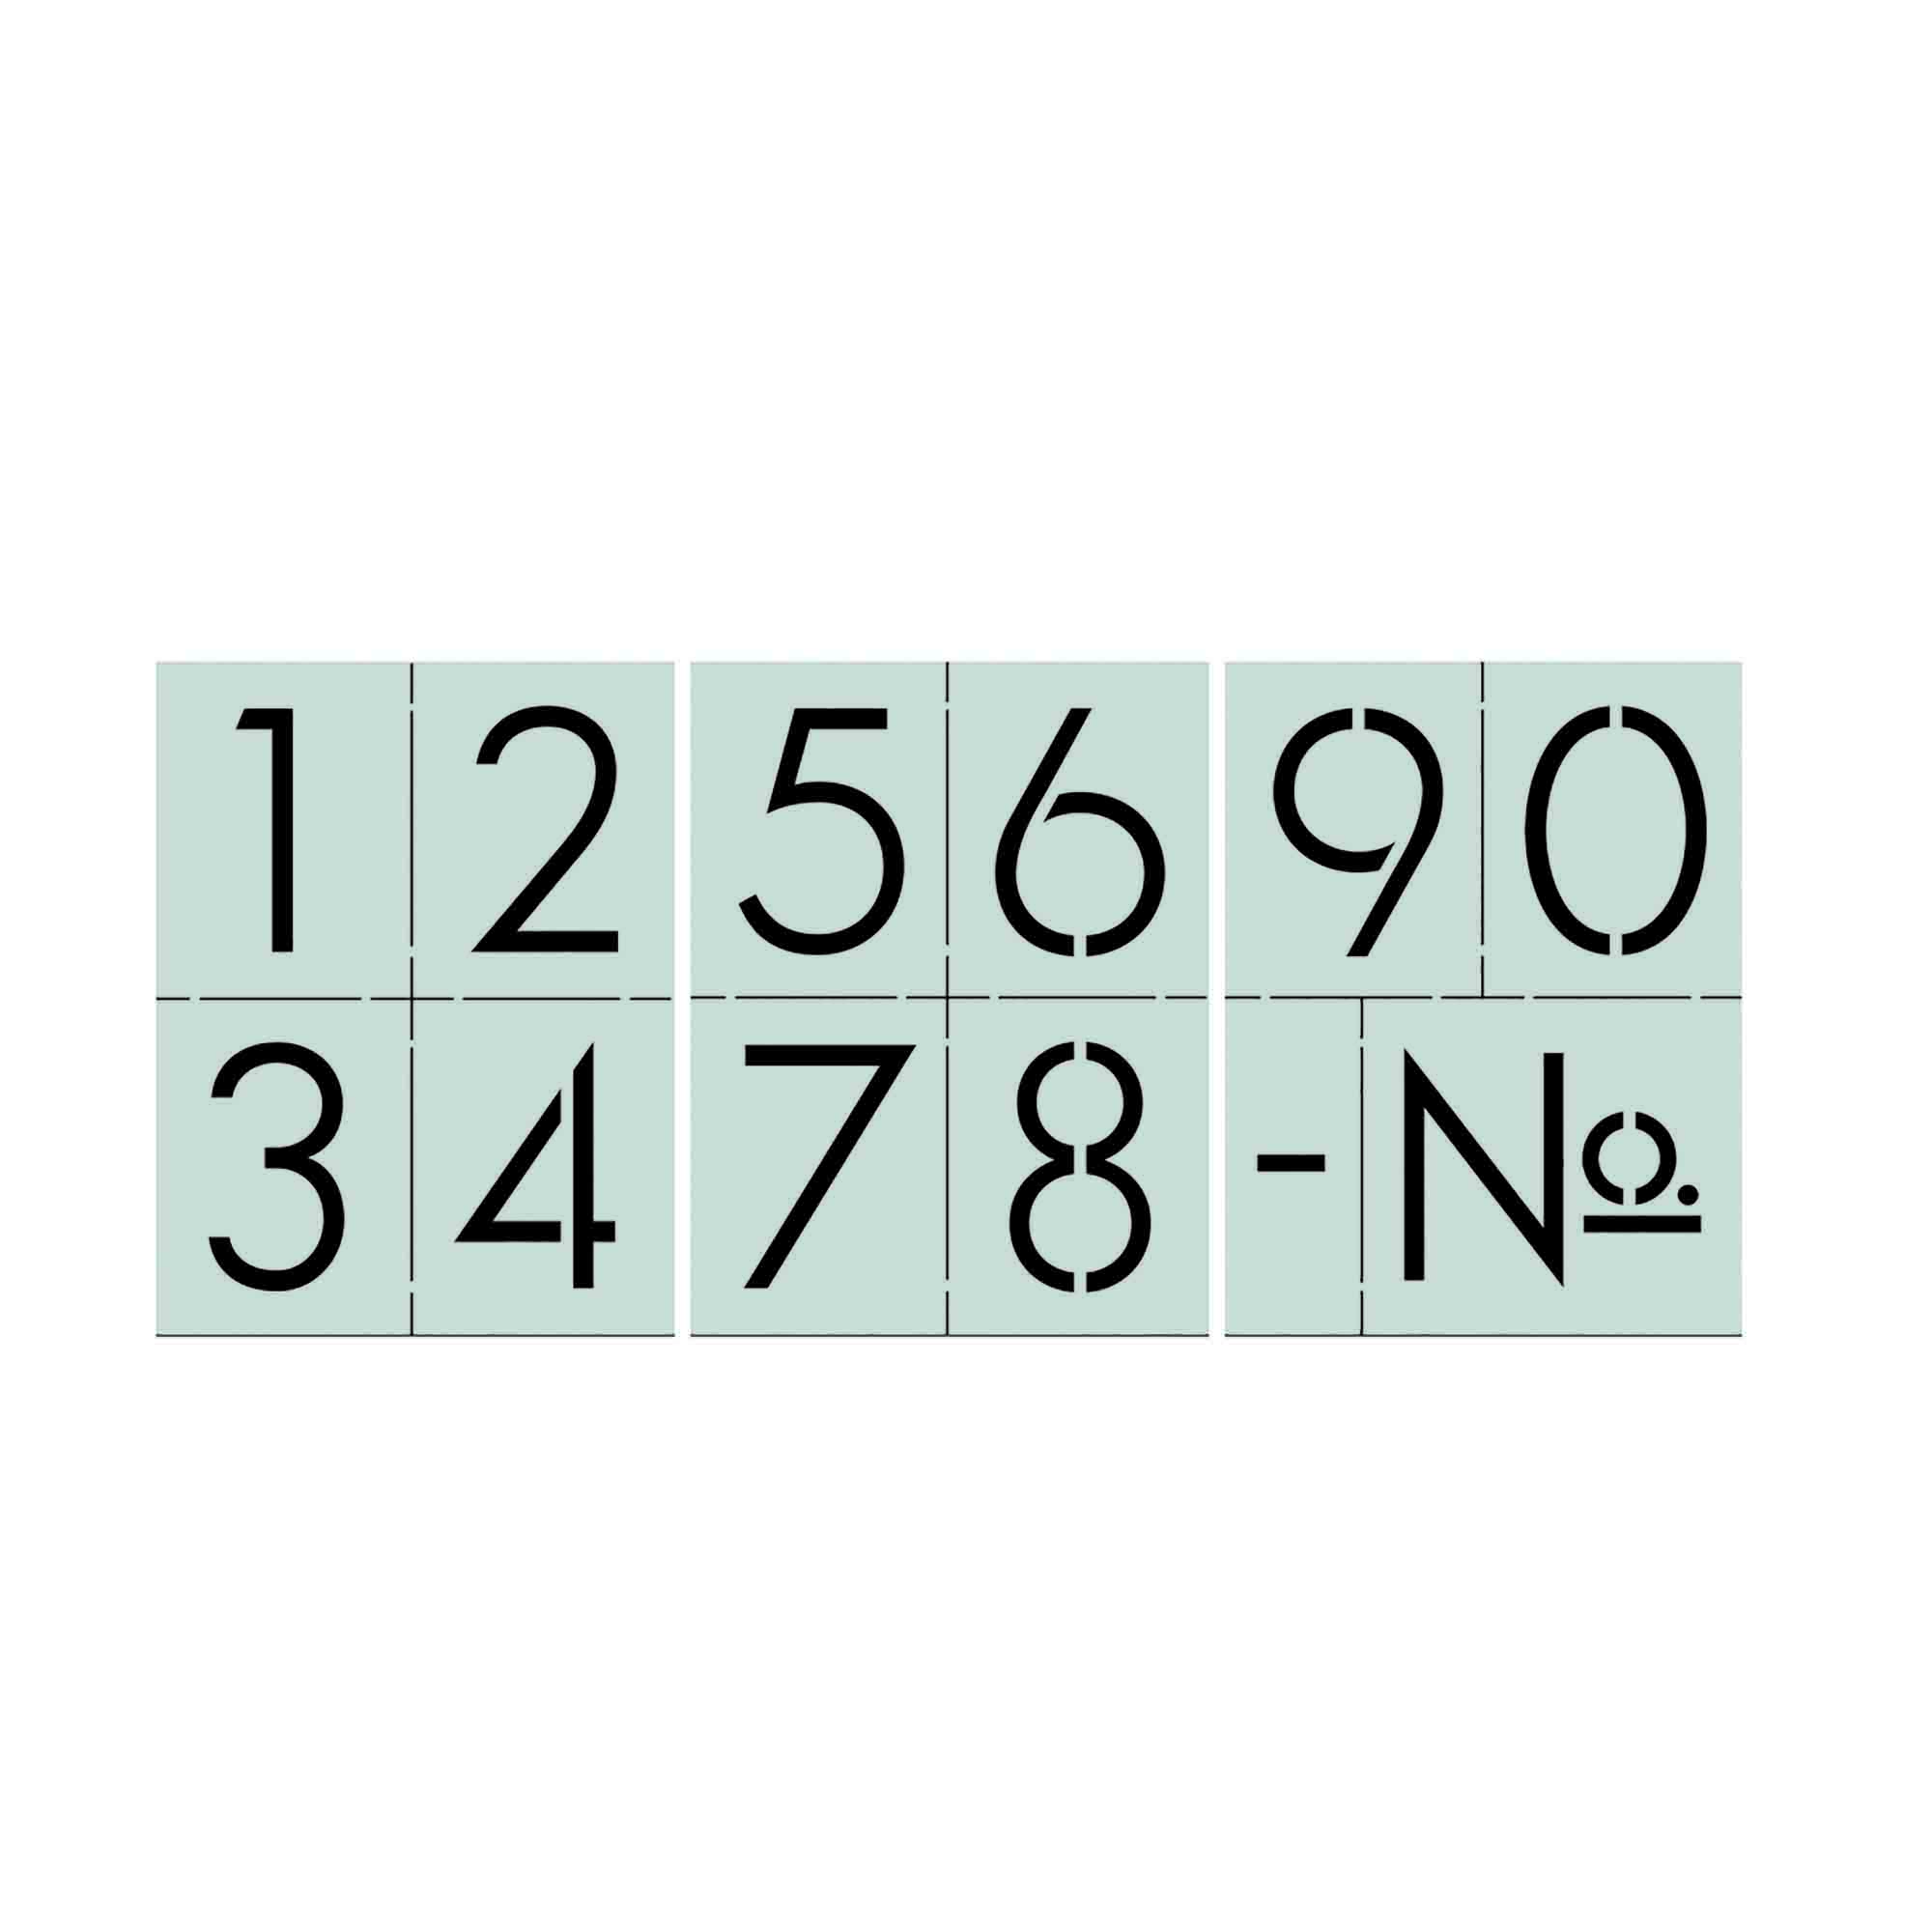 Monogram Letter and Number Stencil Set